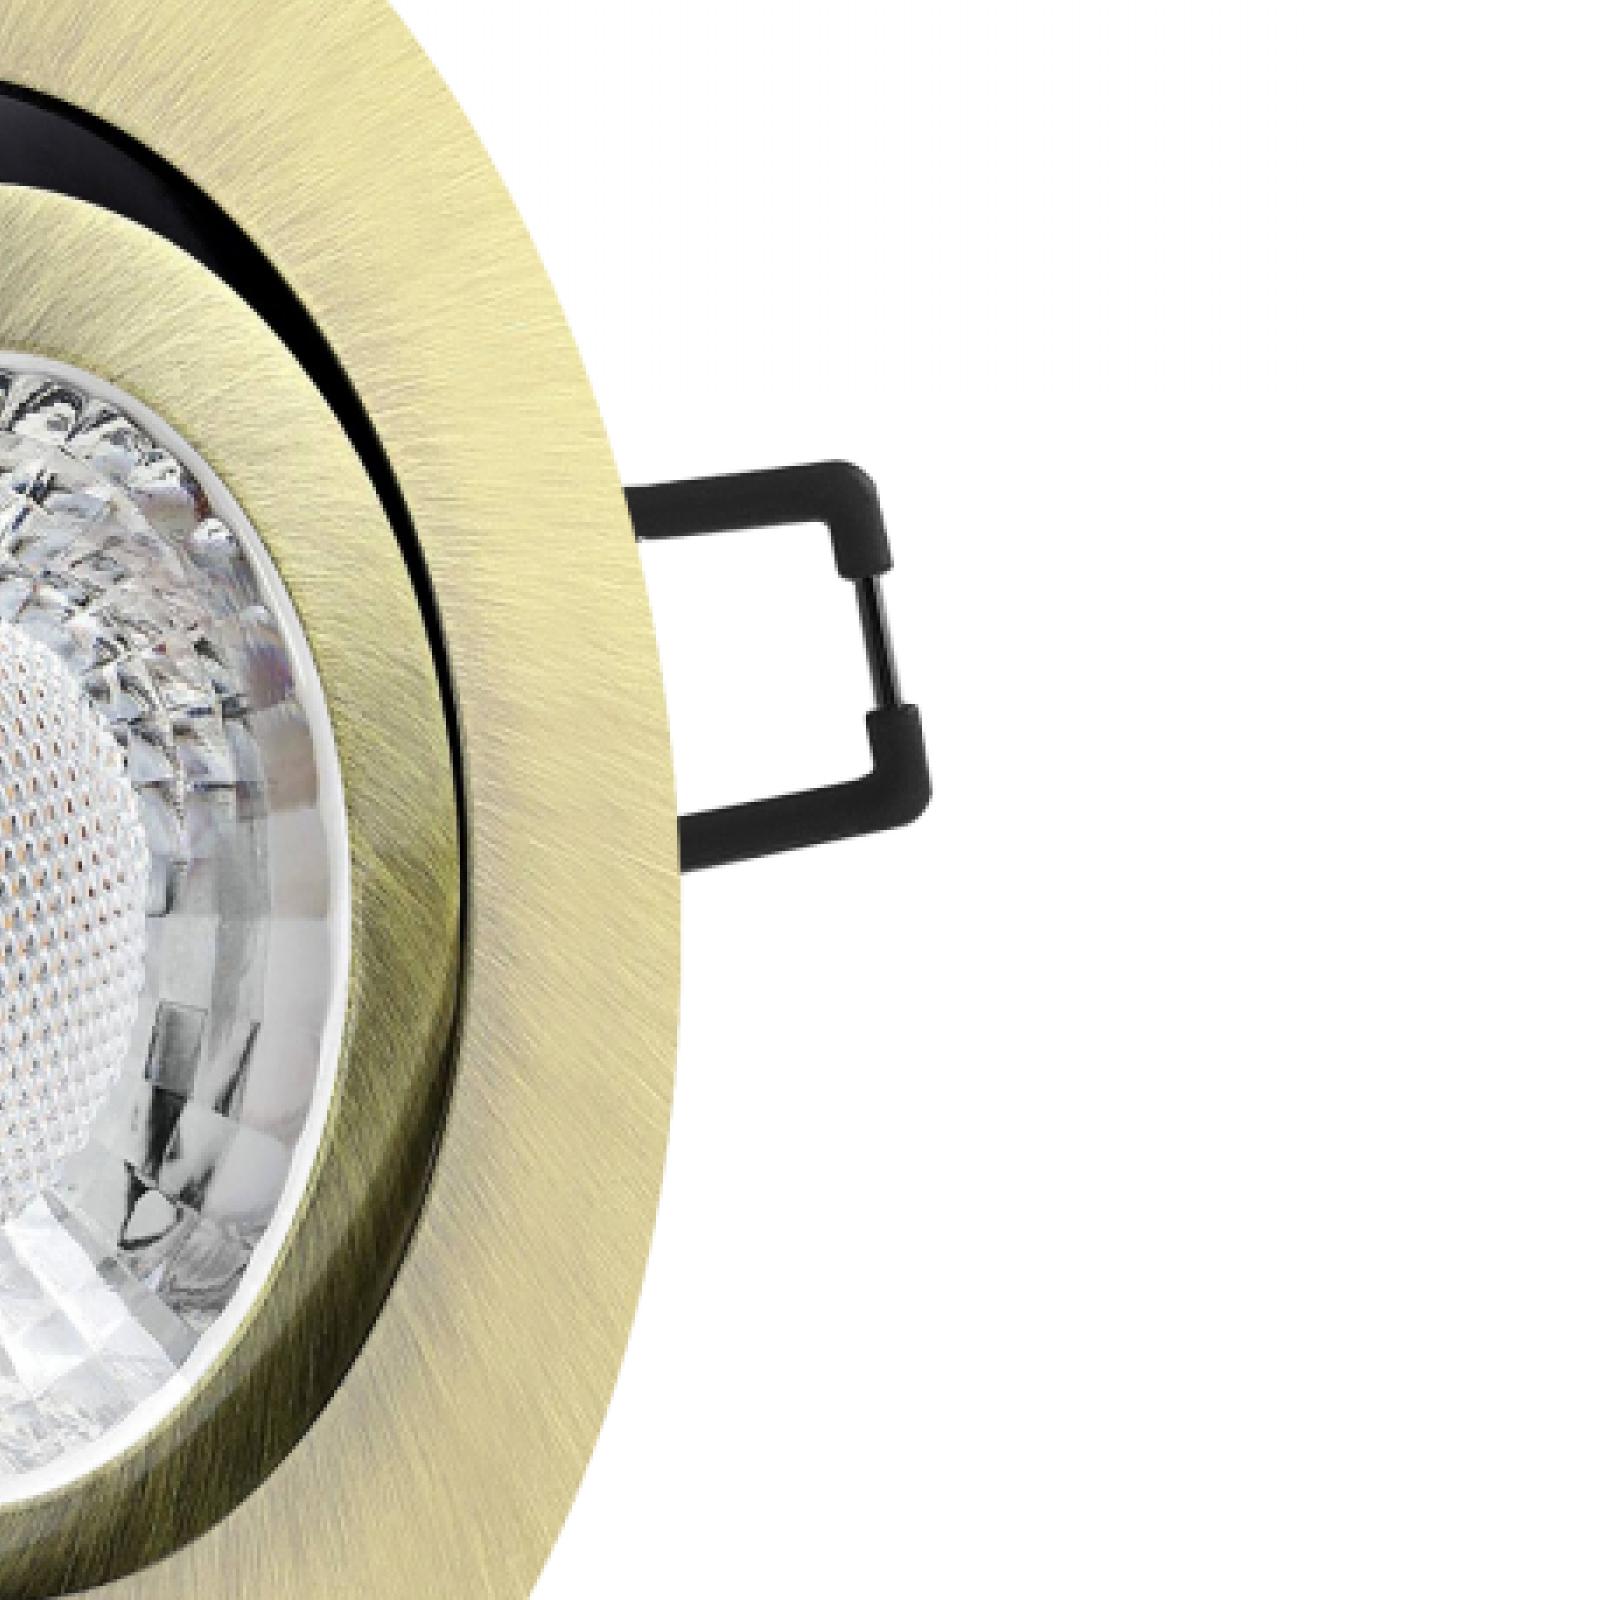 LED Einbaustrahler Altmessing gebürstet | Runder Einbauspot | 360° schwenkbar | Lochmaß Ø 68mm - 75mm | geringe Einbautiefe 25mm | Anschlussfertig 